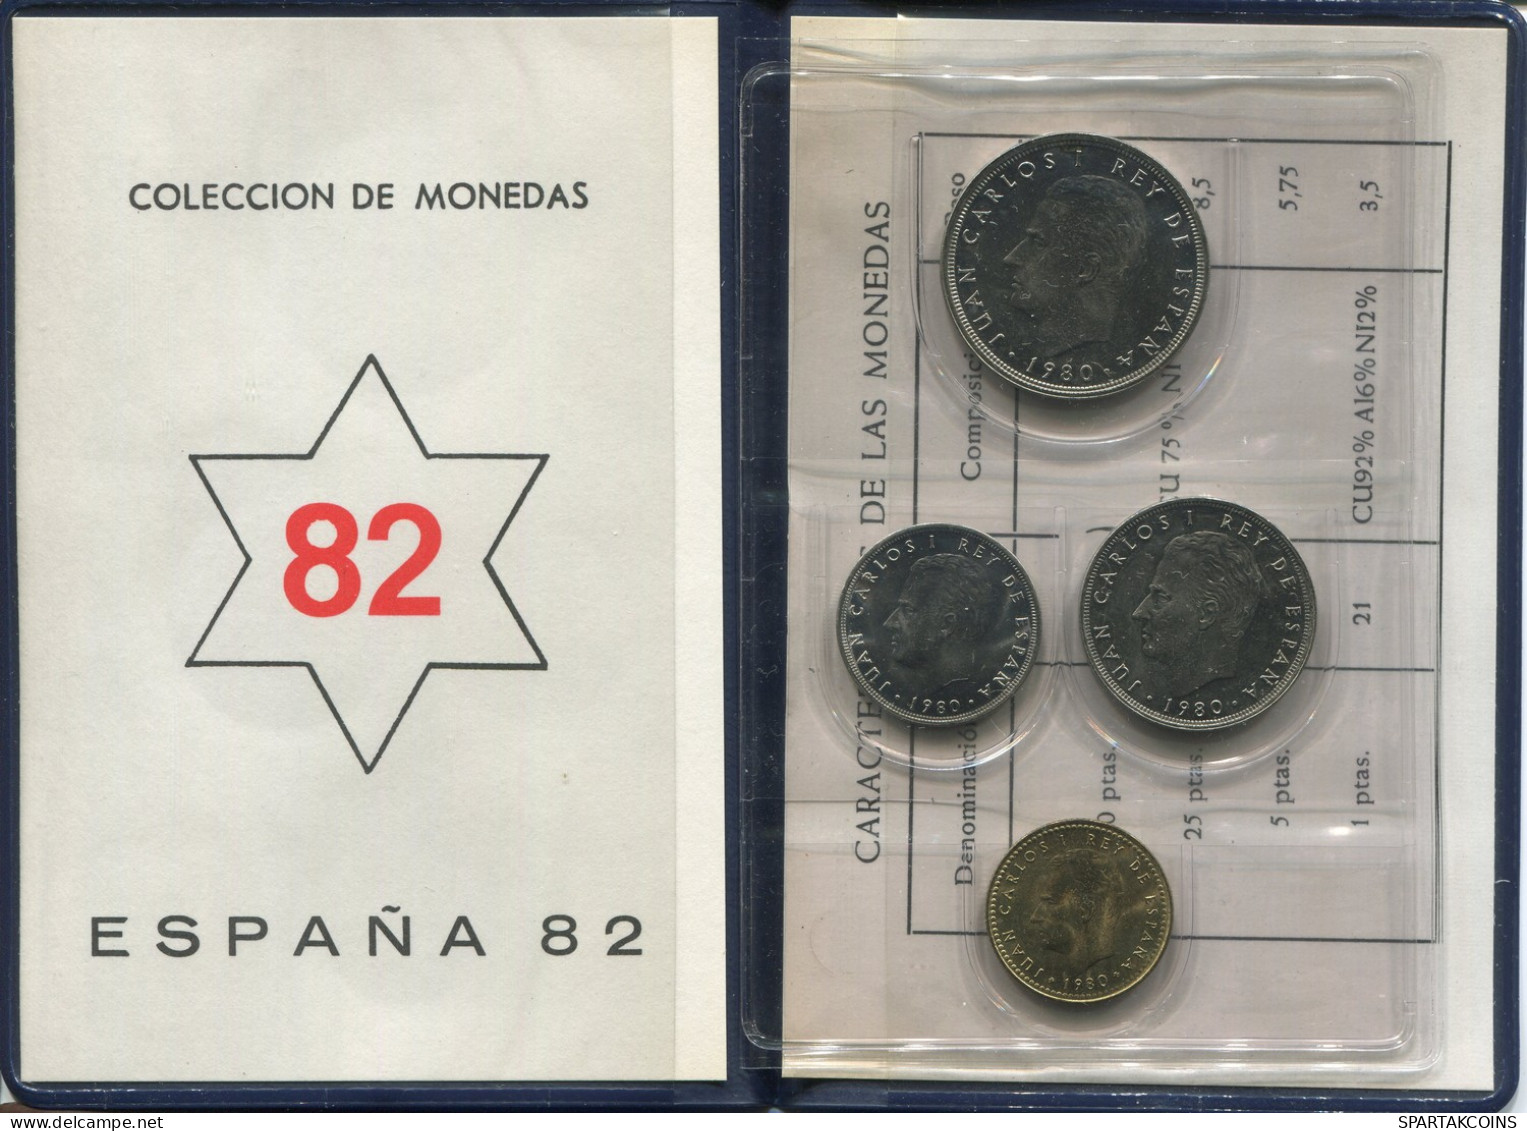 SPAIN 1980*82 Coin SET MUNDIAL*82 UNC #SET1260.4.U - Mint Sets & Proof Sets